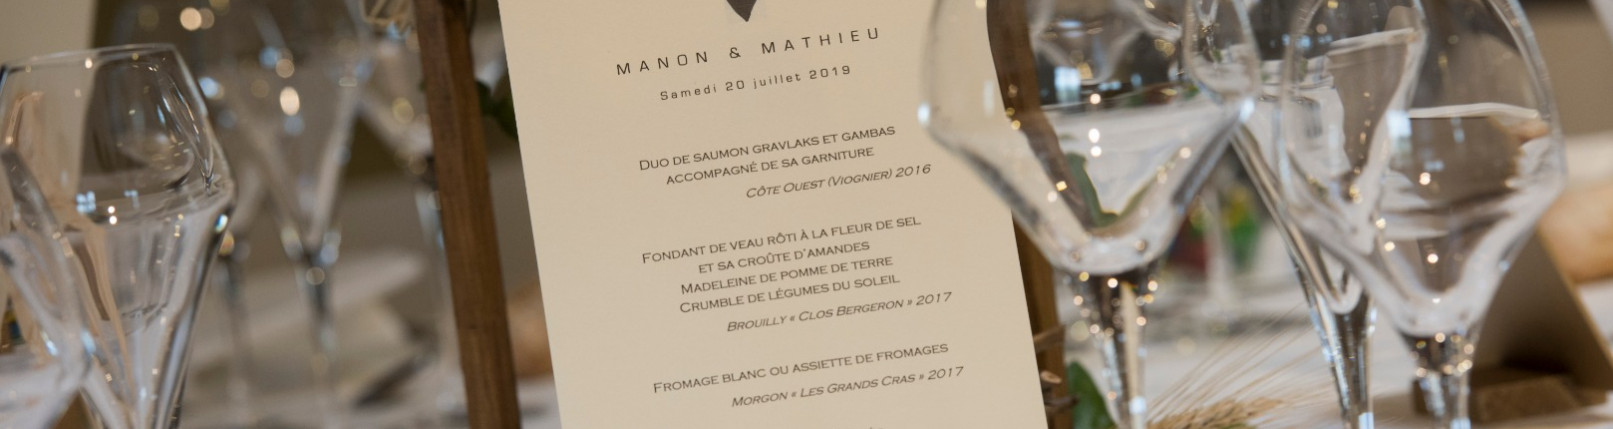 Mariage de Manon et Mathieu au Domaine de la Croix Rochefort.